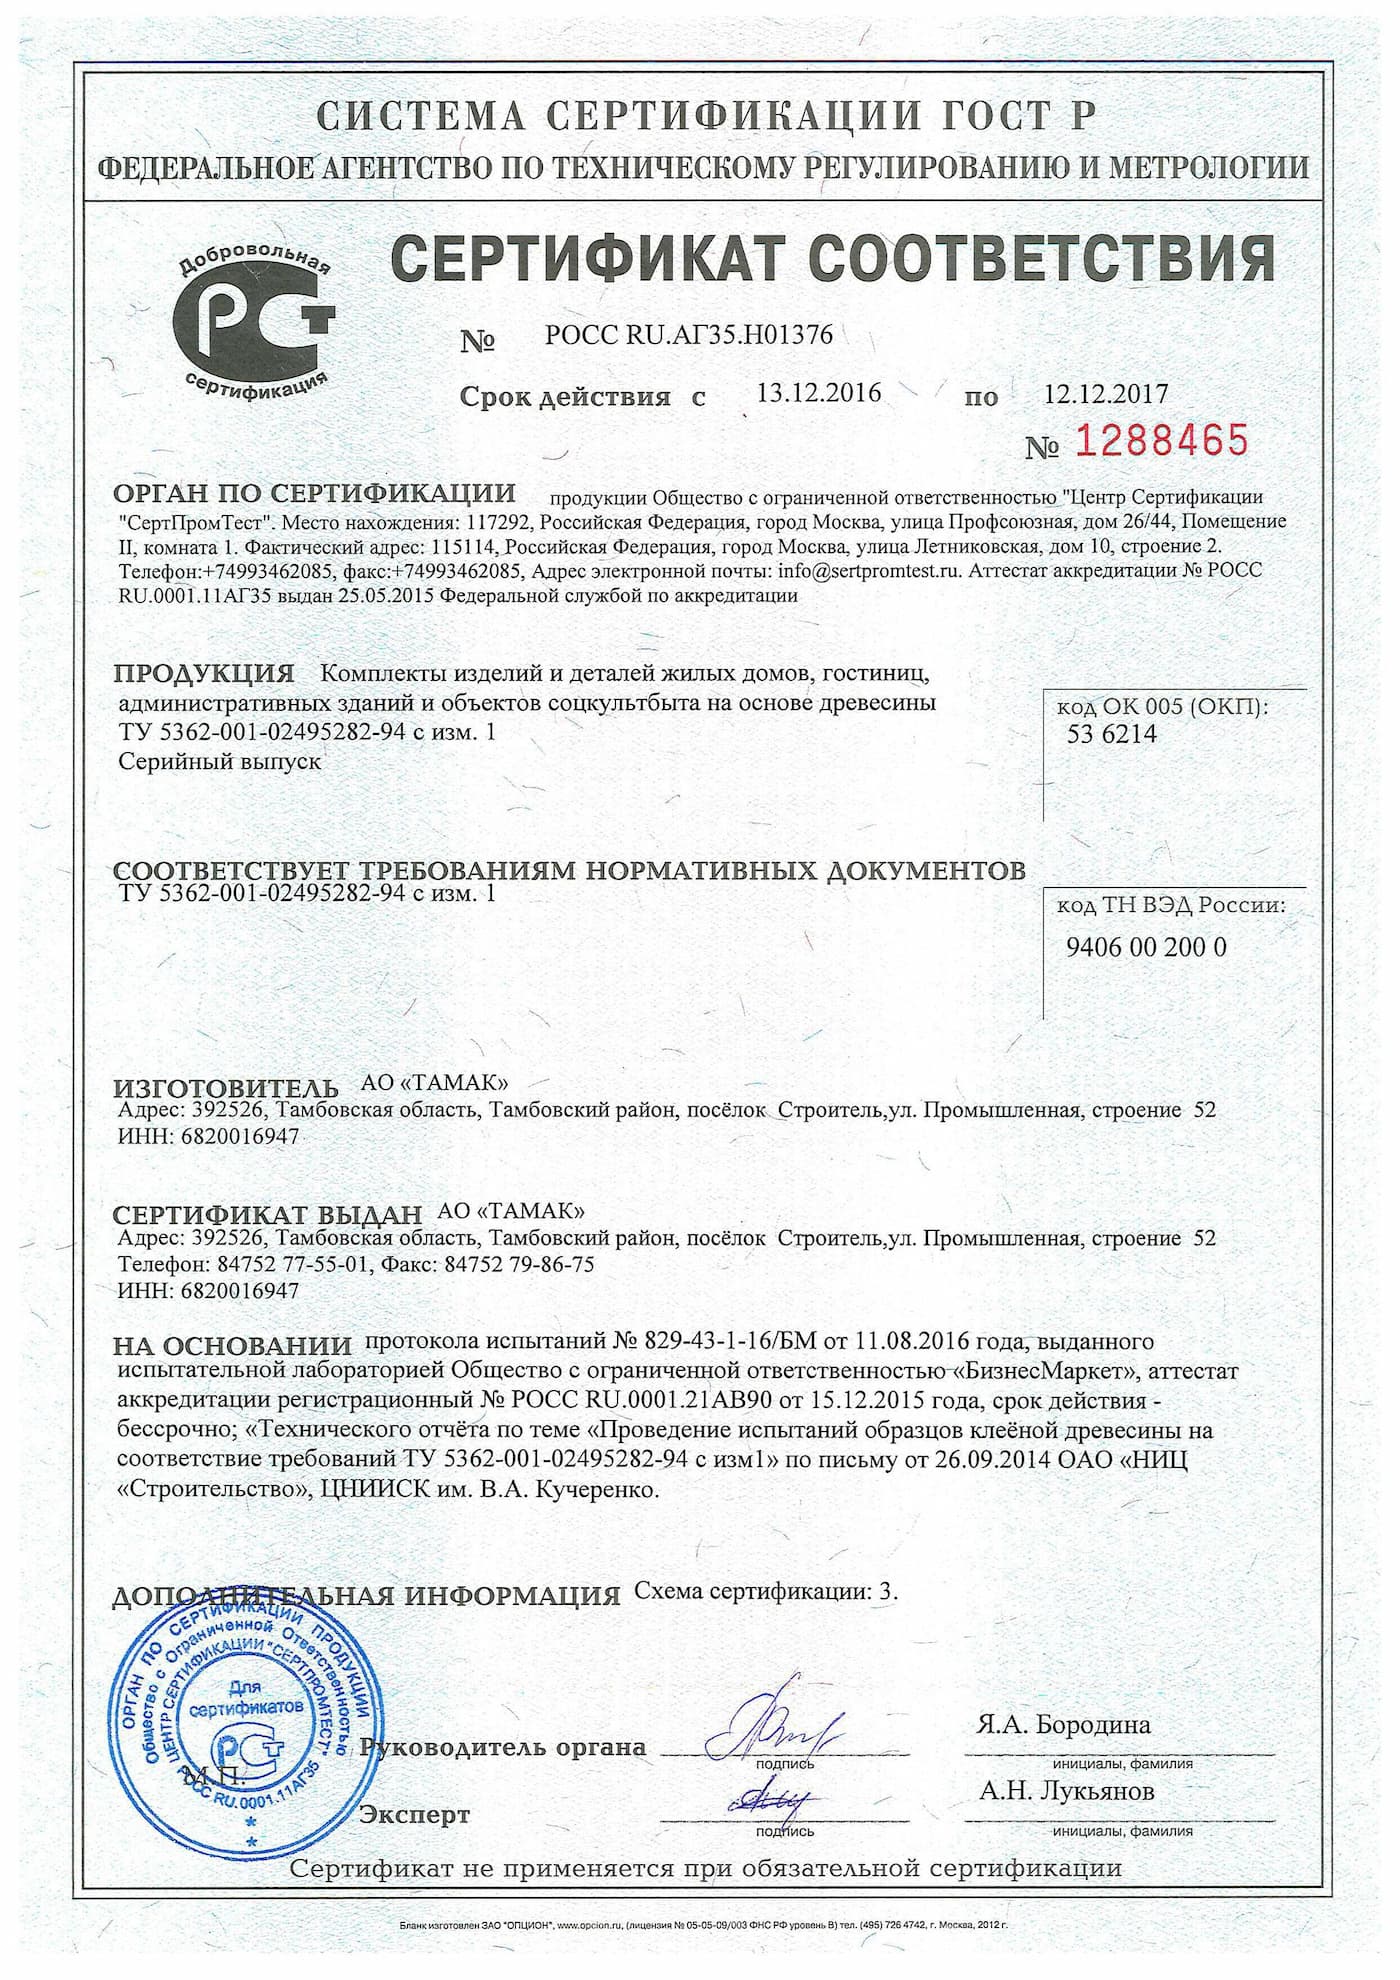 Сертификат соответствия на комплекты конструкций на основе древесины